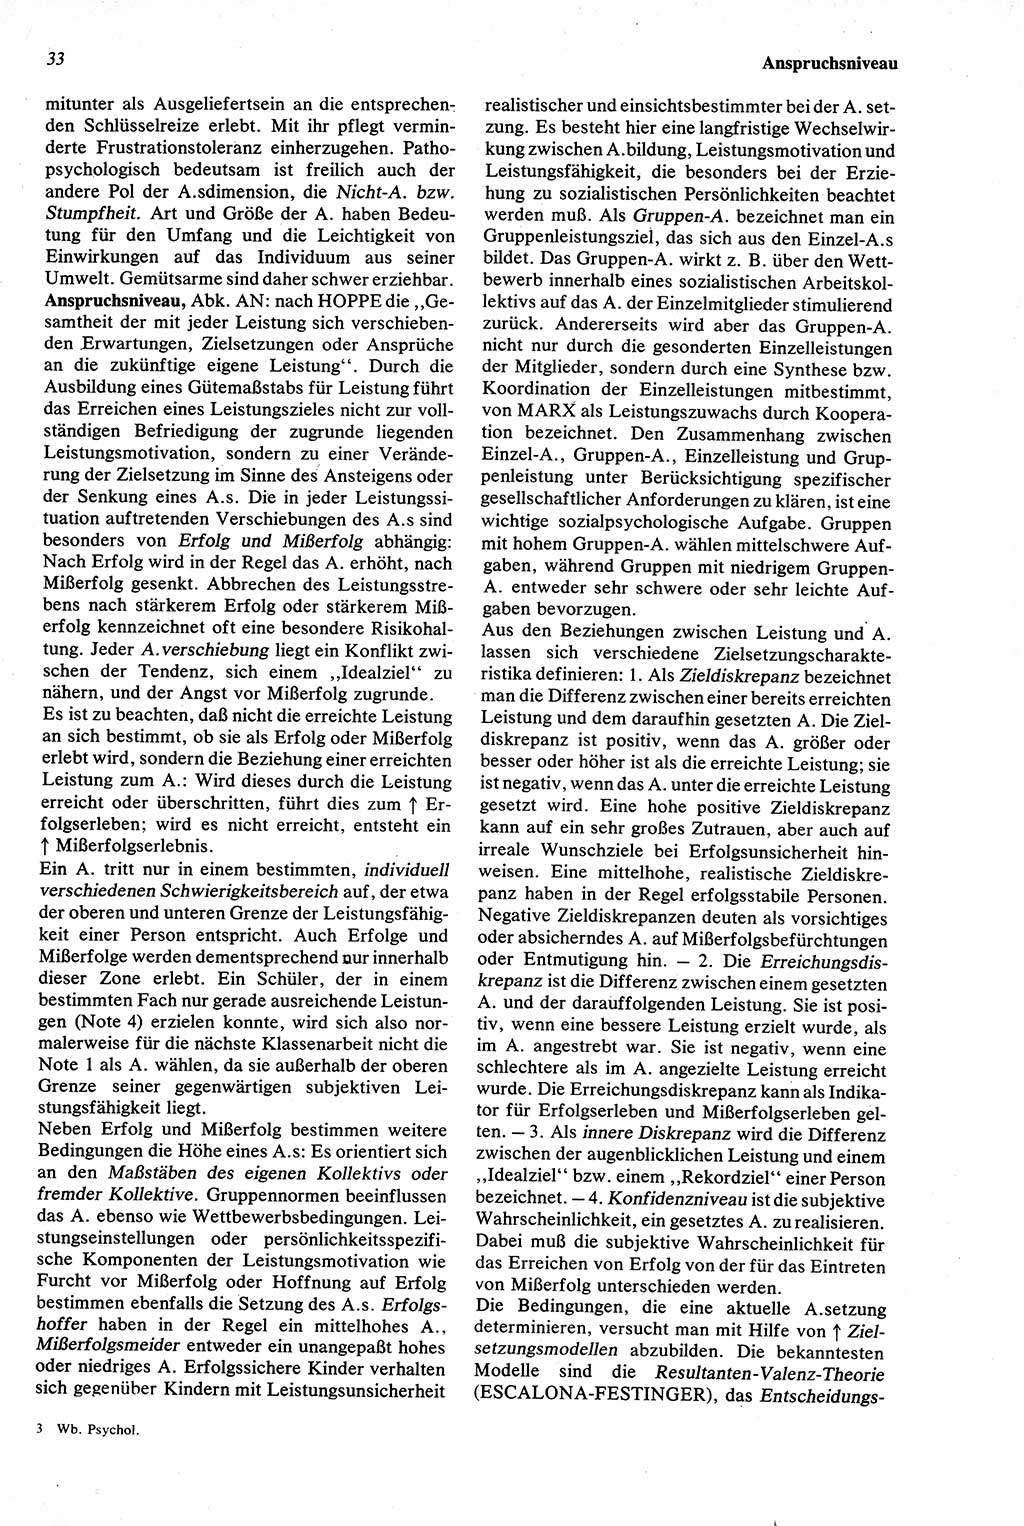 Wörterbuch der Psychologie [Deutsche Demokratische Republik (DDR)] 1976, Seite 33 (Wb. Psych. DDR 1976, S. 33)